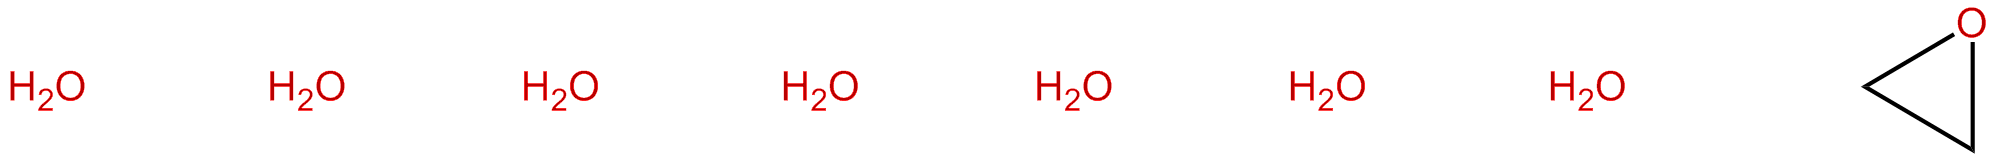 Image of oxirane hydrate